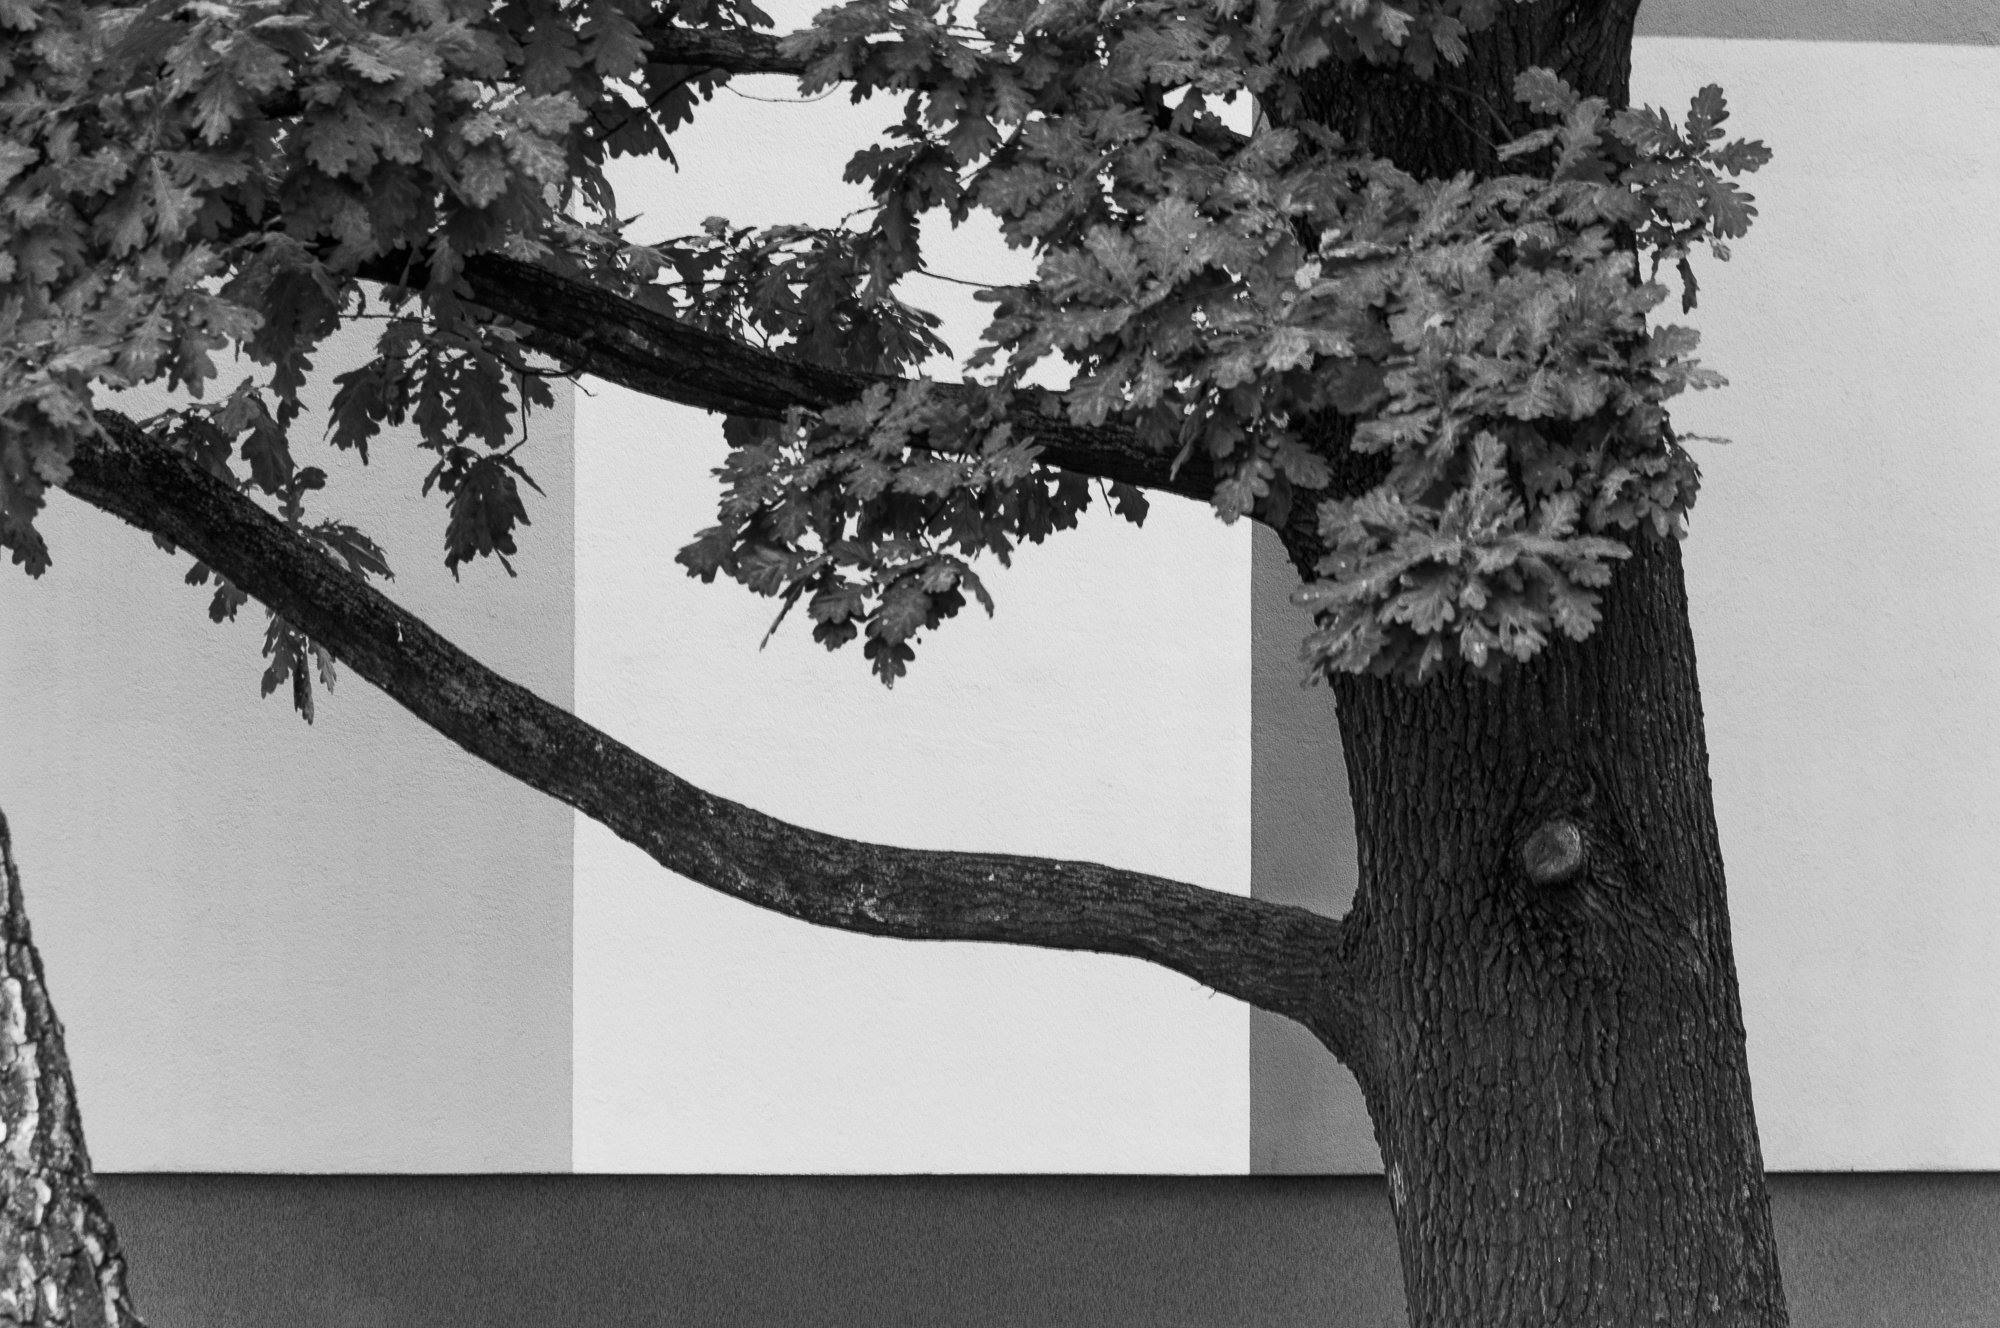 Adam Mazek Photography Warsaw (Warszawa) 2019. Post: "The process of PDFs edition." Tree. Minimalism.